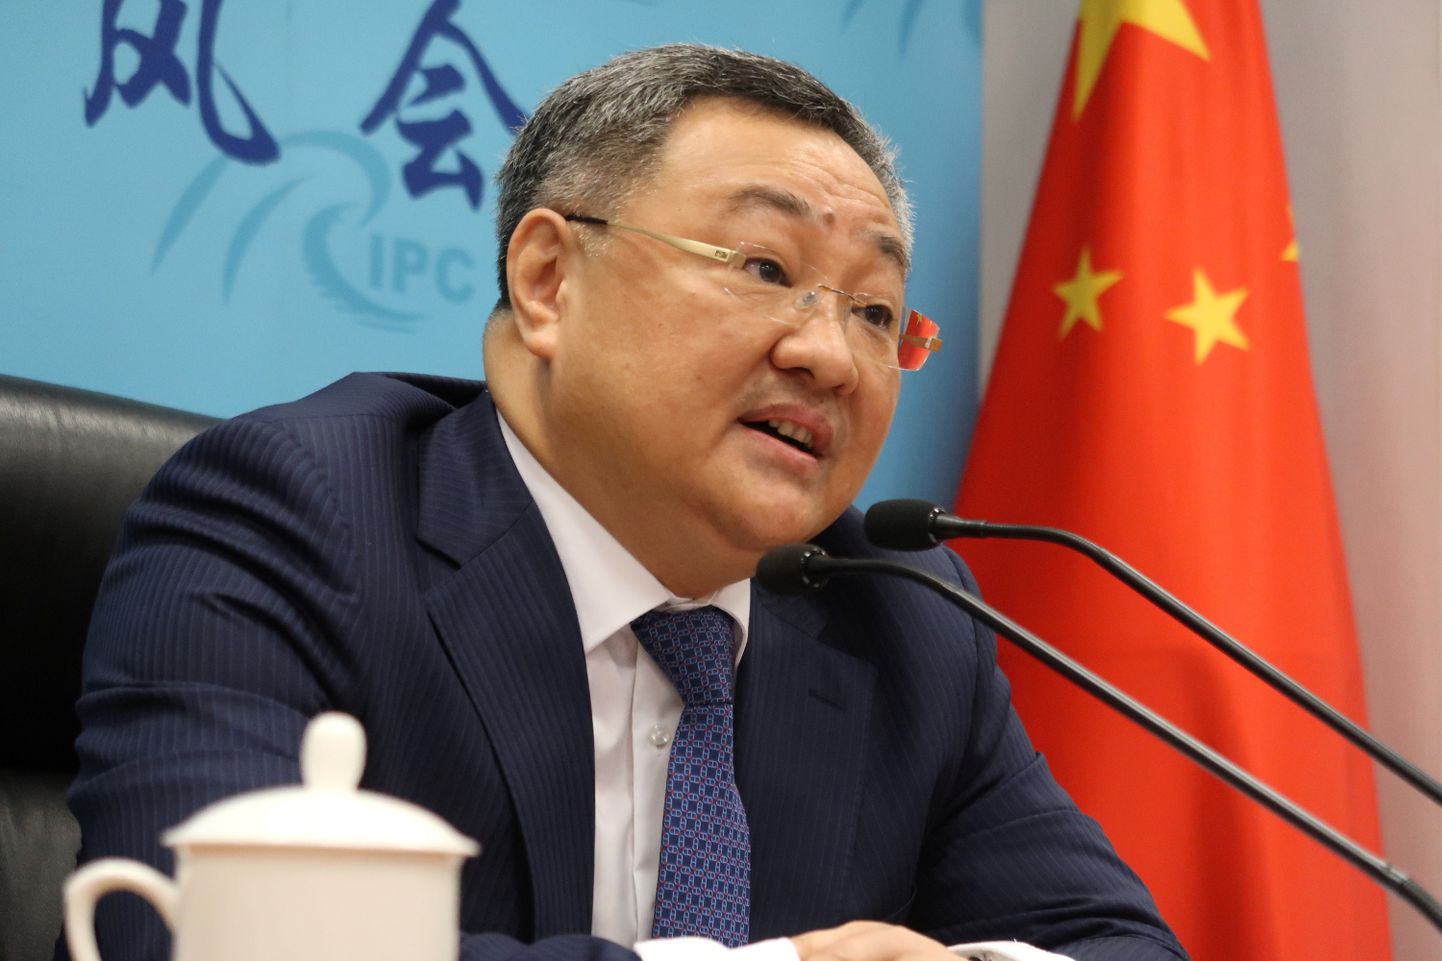 Hiina välisministeeriumi relvakontrollijuht Fu Cong pressikonverentsil Pekingis 8. juuli 2020.